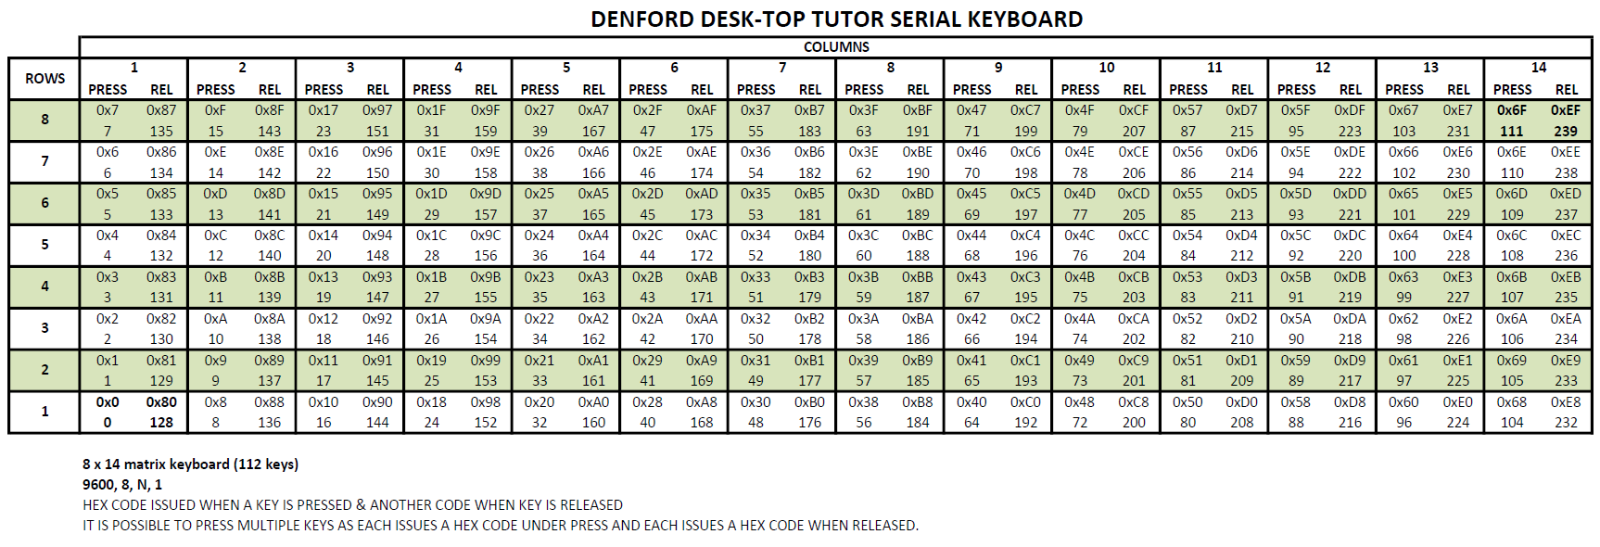 Denford Desk-Top Tutor DeskTop.png